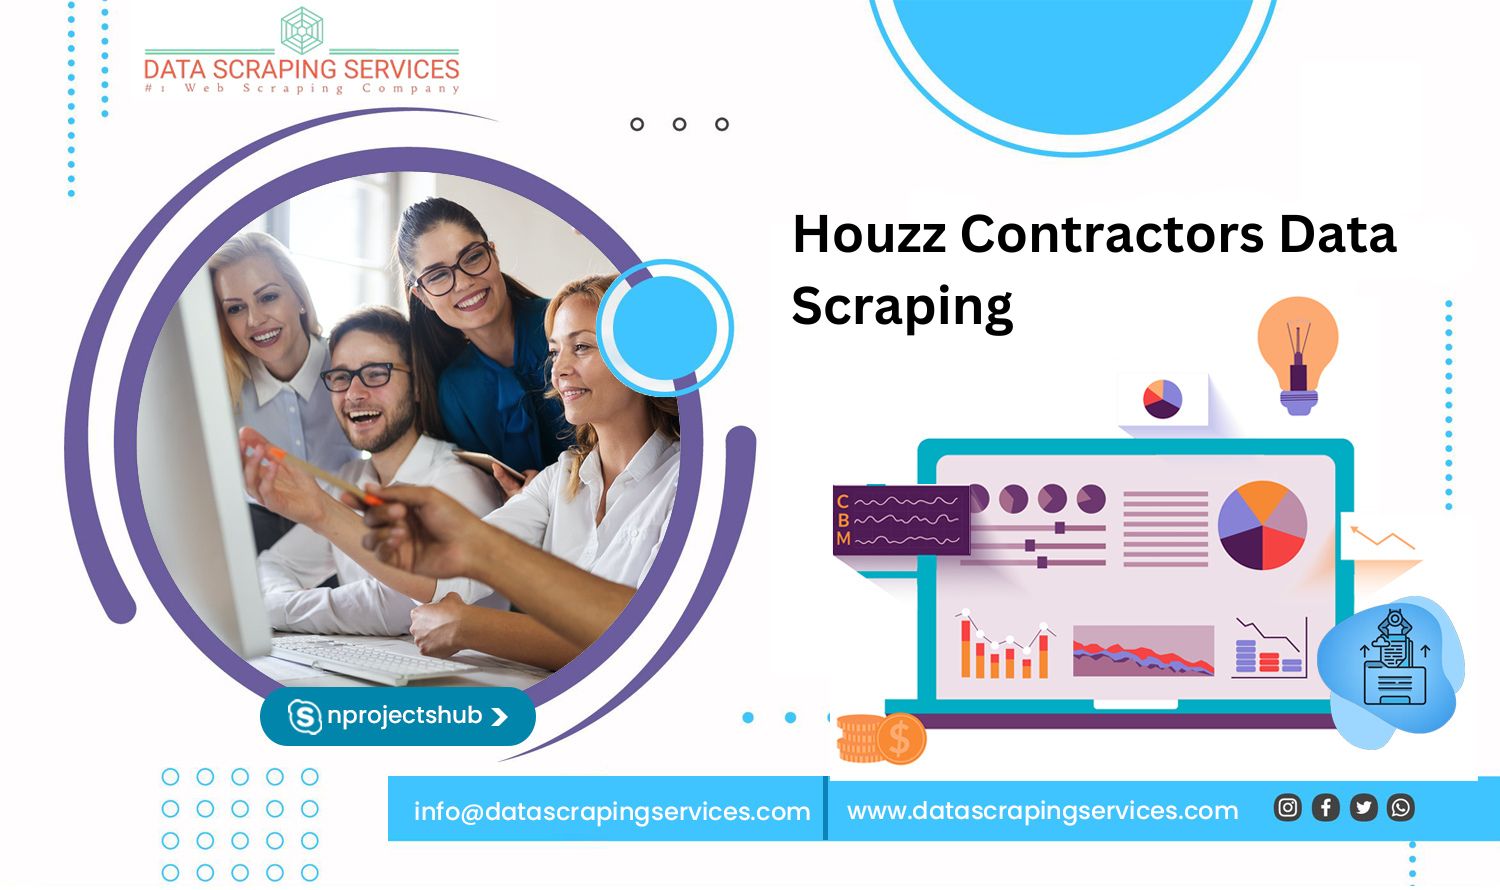 Houzz Contractors Data Scraping